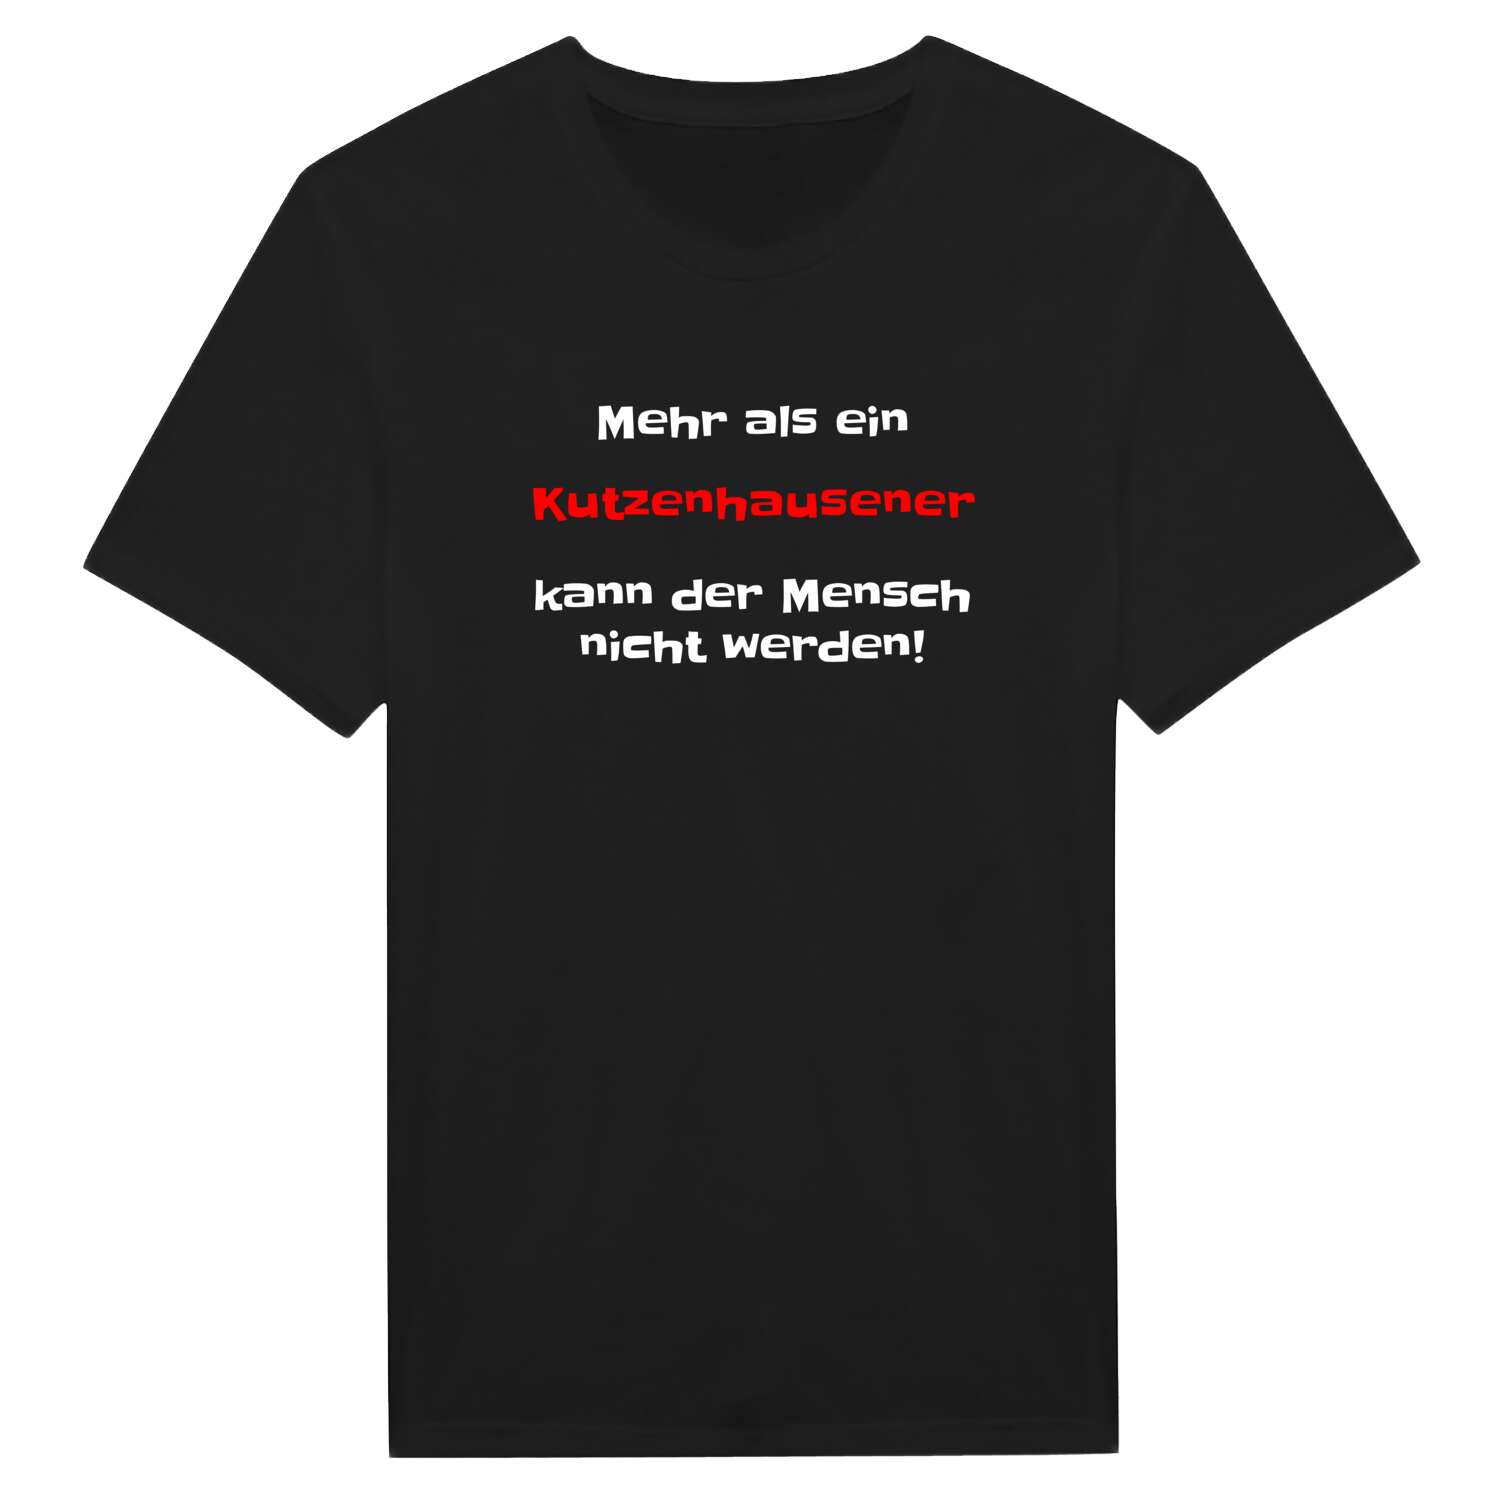 Kutzenhausen T-Shirt »Mehr als ein«